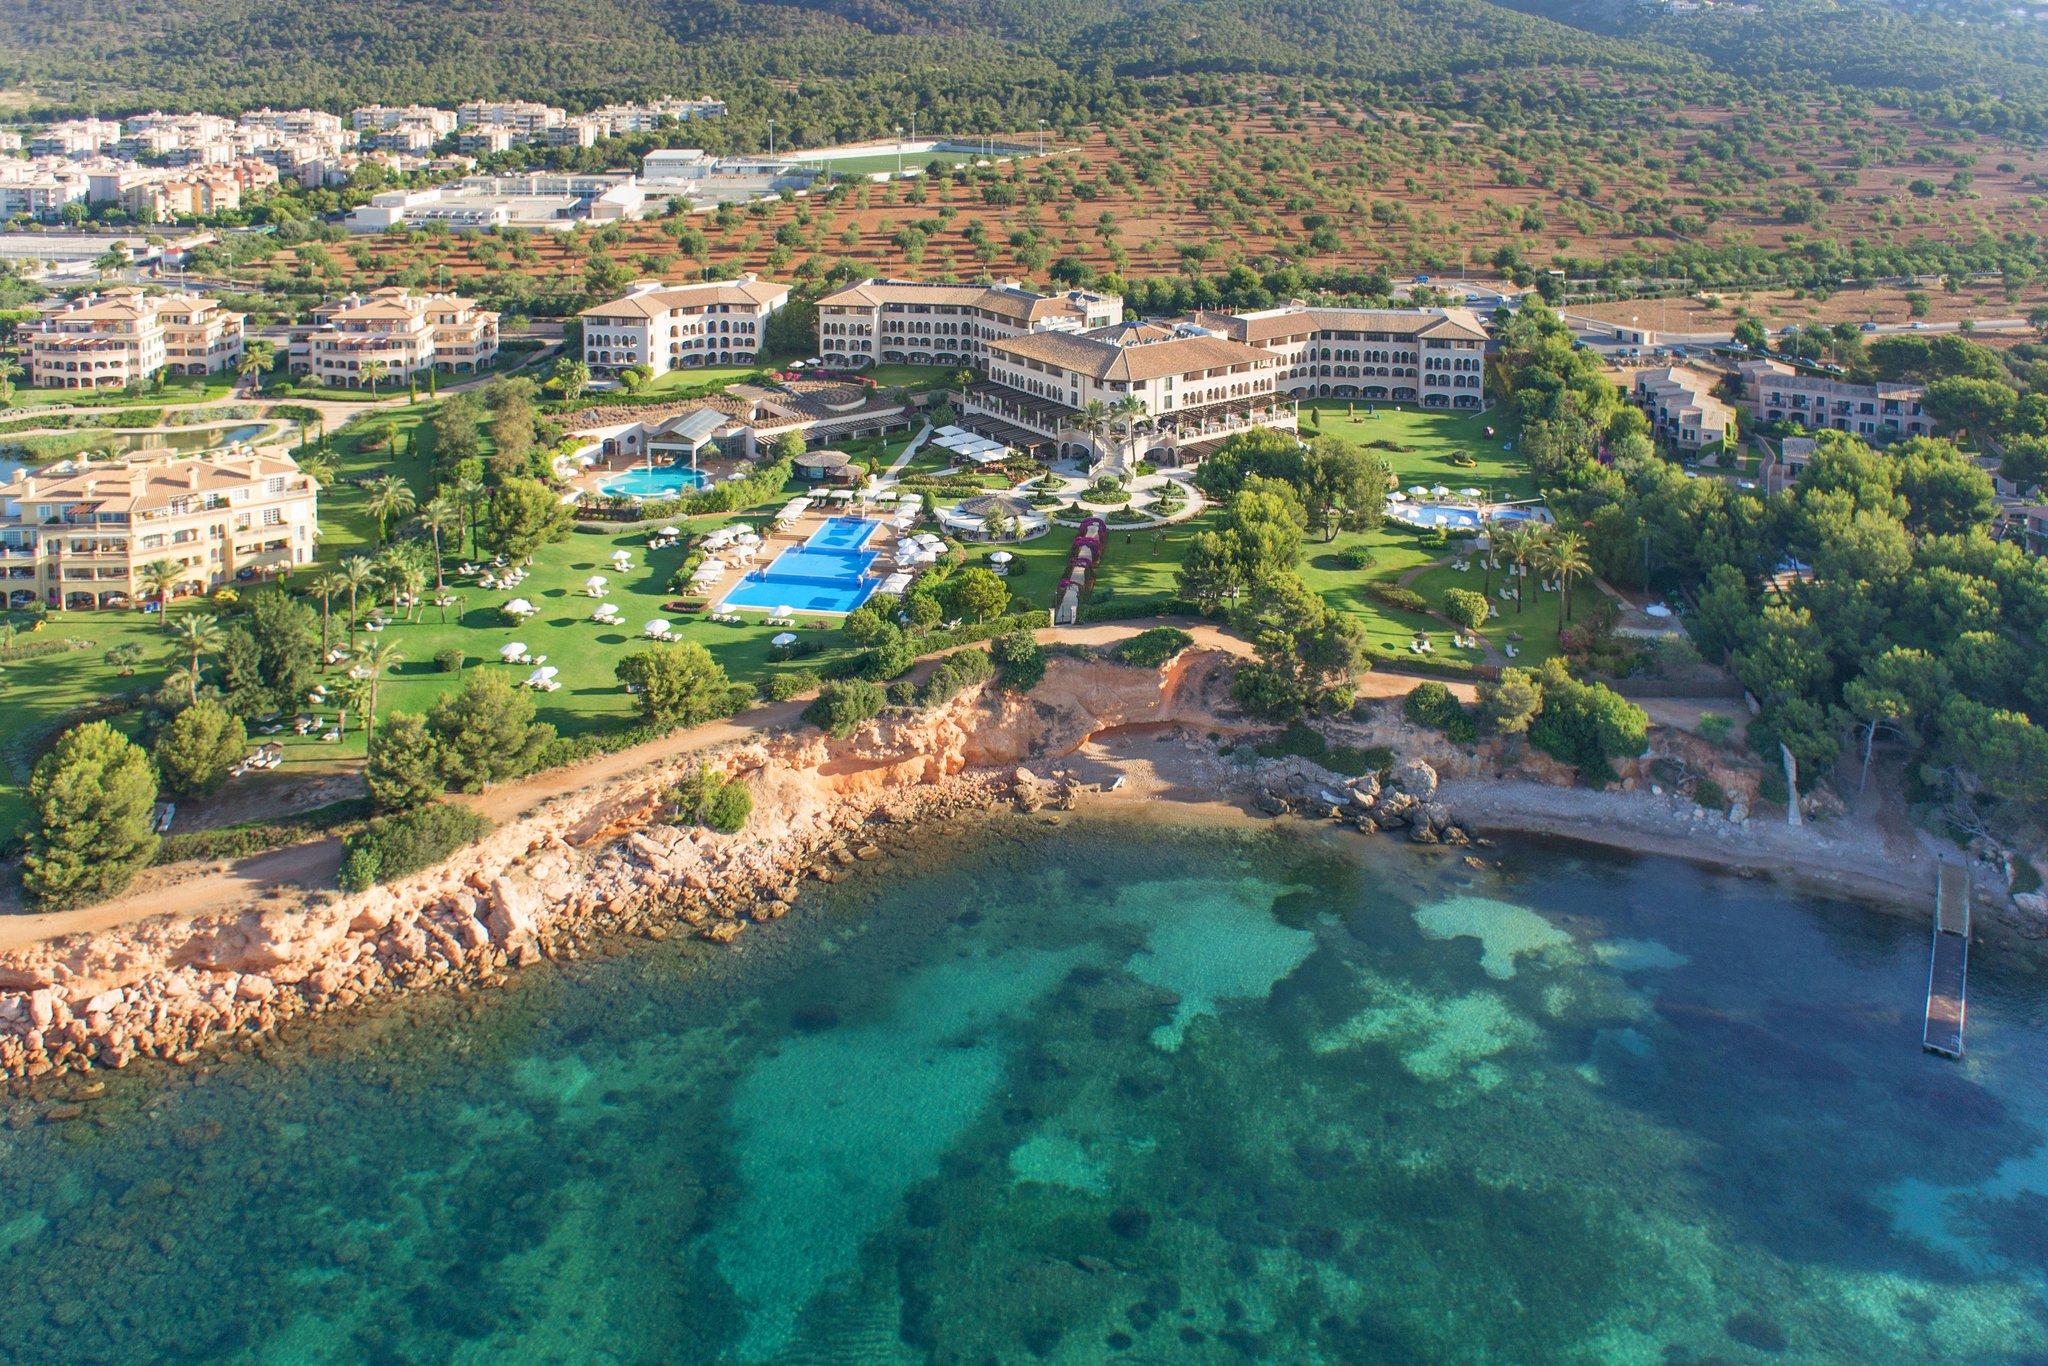 The St. Regis Mardavall Mallorca Resort in Palma de Mallorca, ES